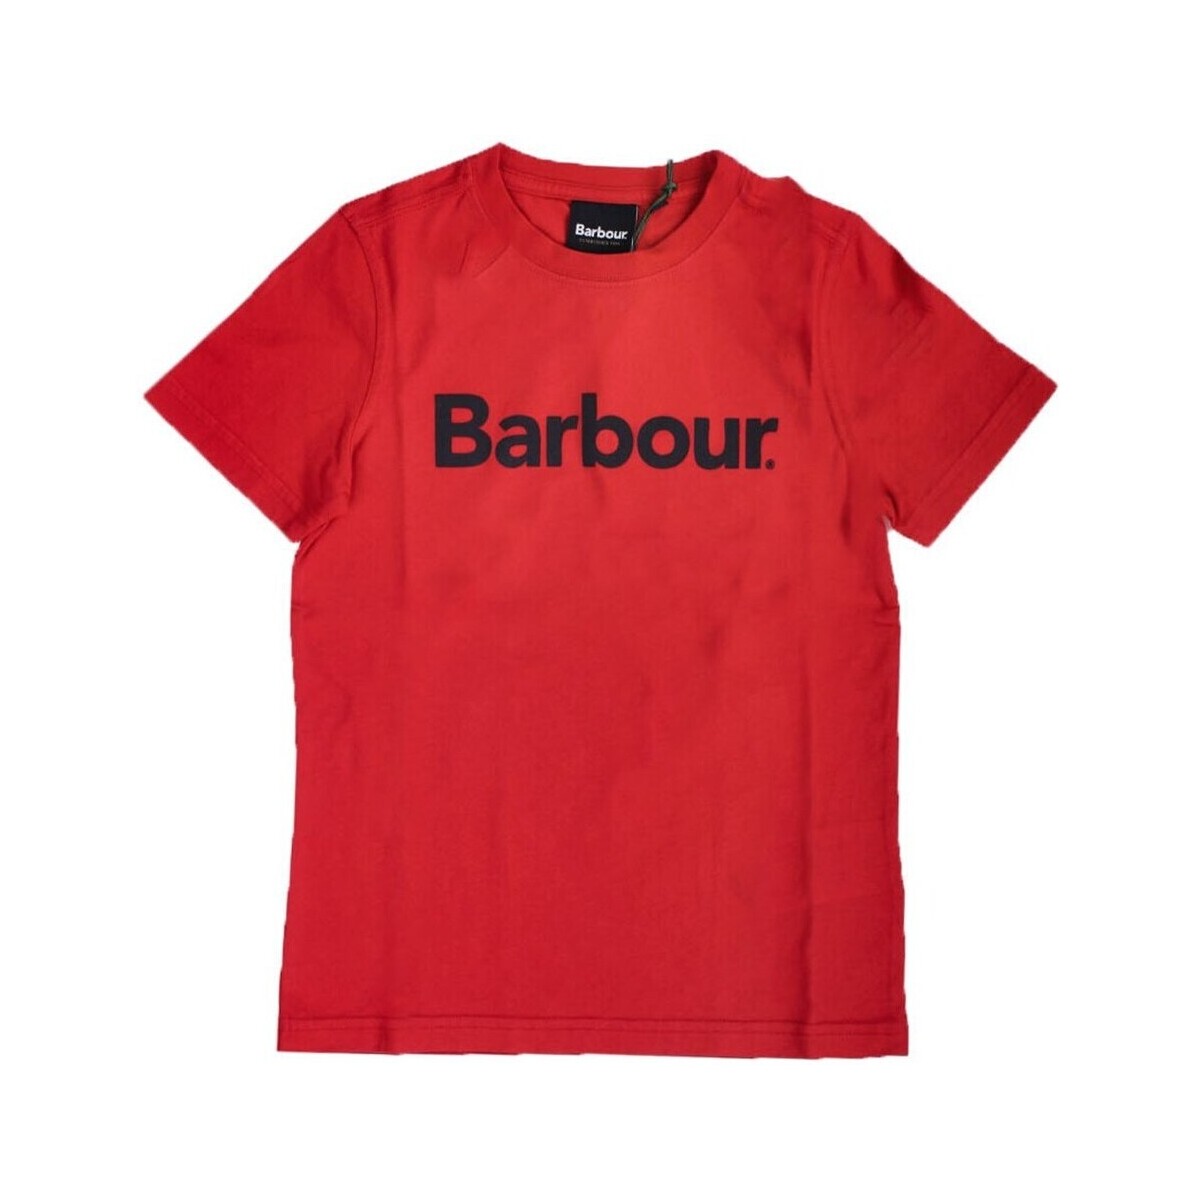 vaatteet Pojat Lyhythihainen t-paita Barbour CTS0060 Punainen